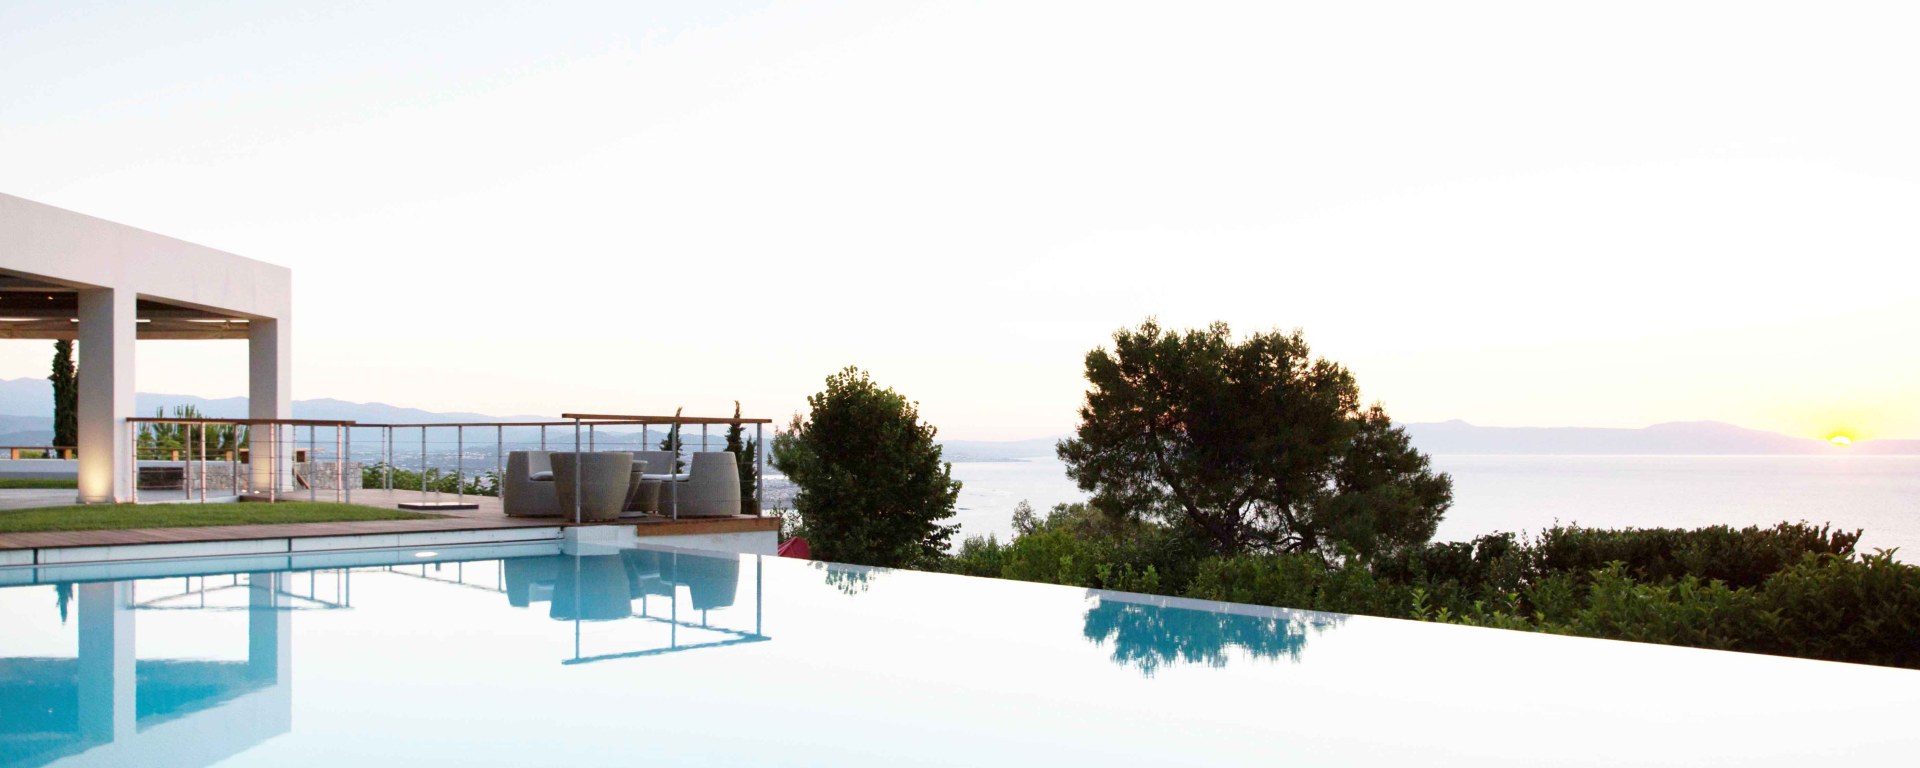 Luxus Ferienhaus Auf Kreta Mieten 3